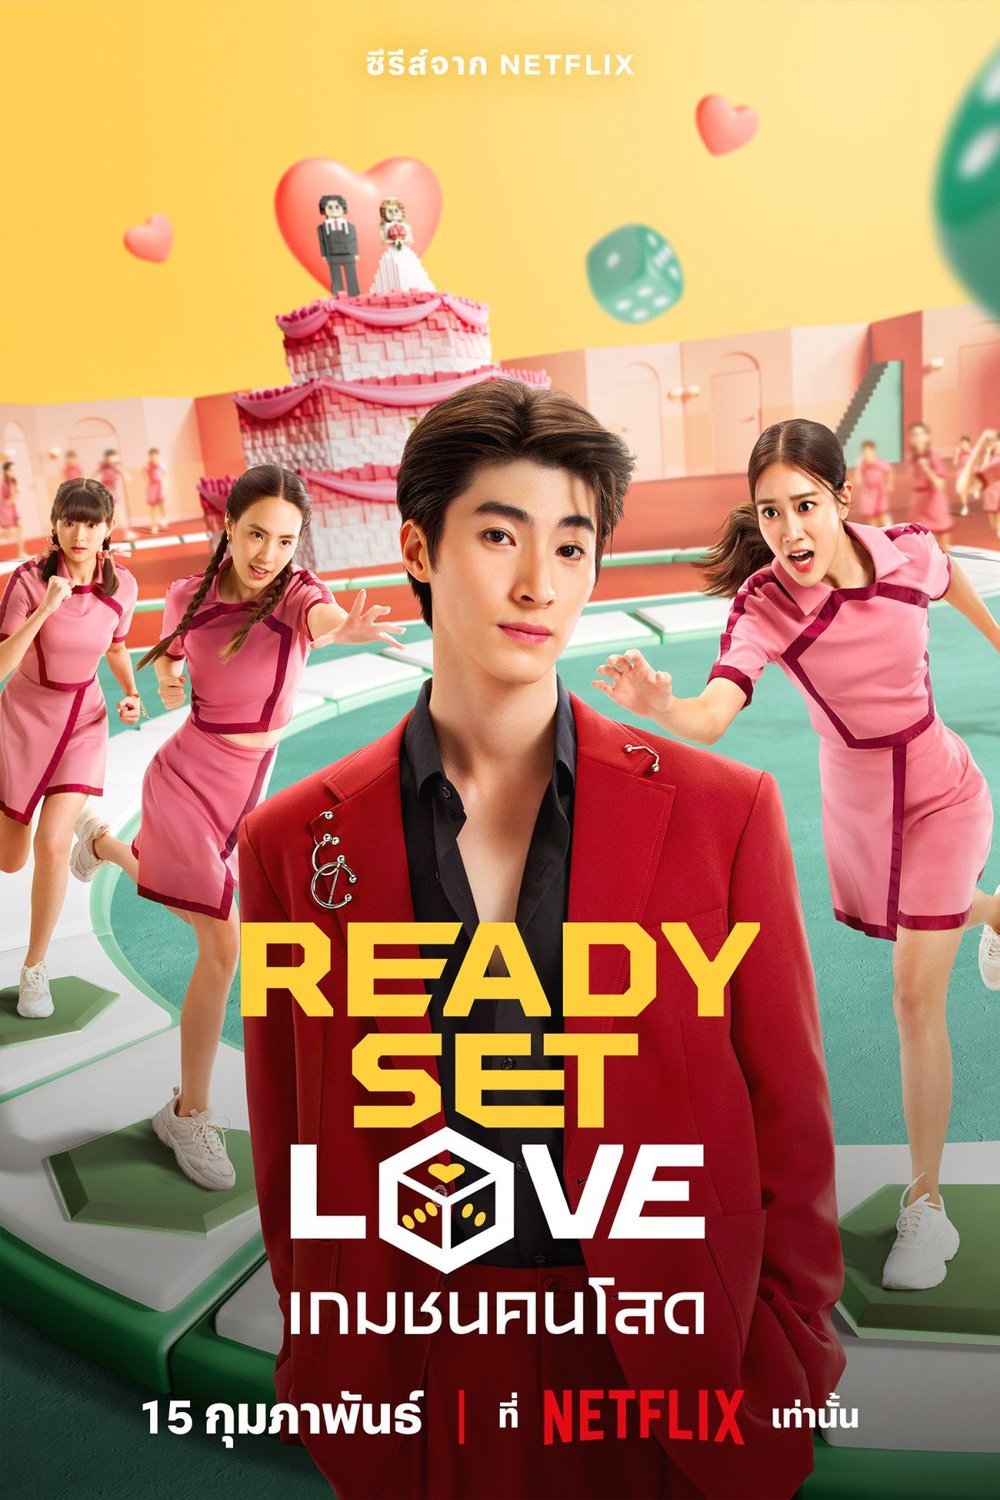 L'affiche originale du film Ready, Set, Love en Thaïlandais